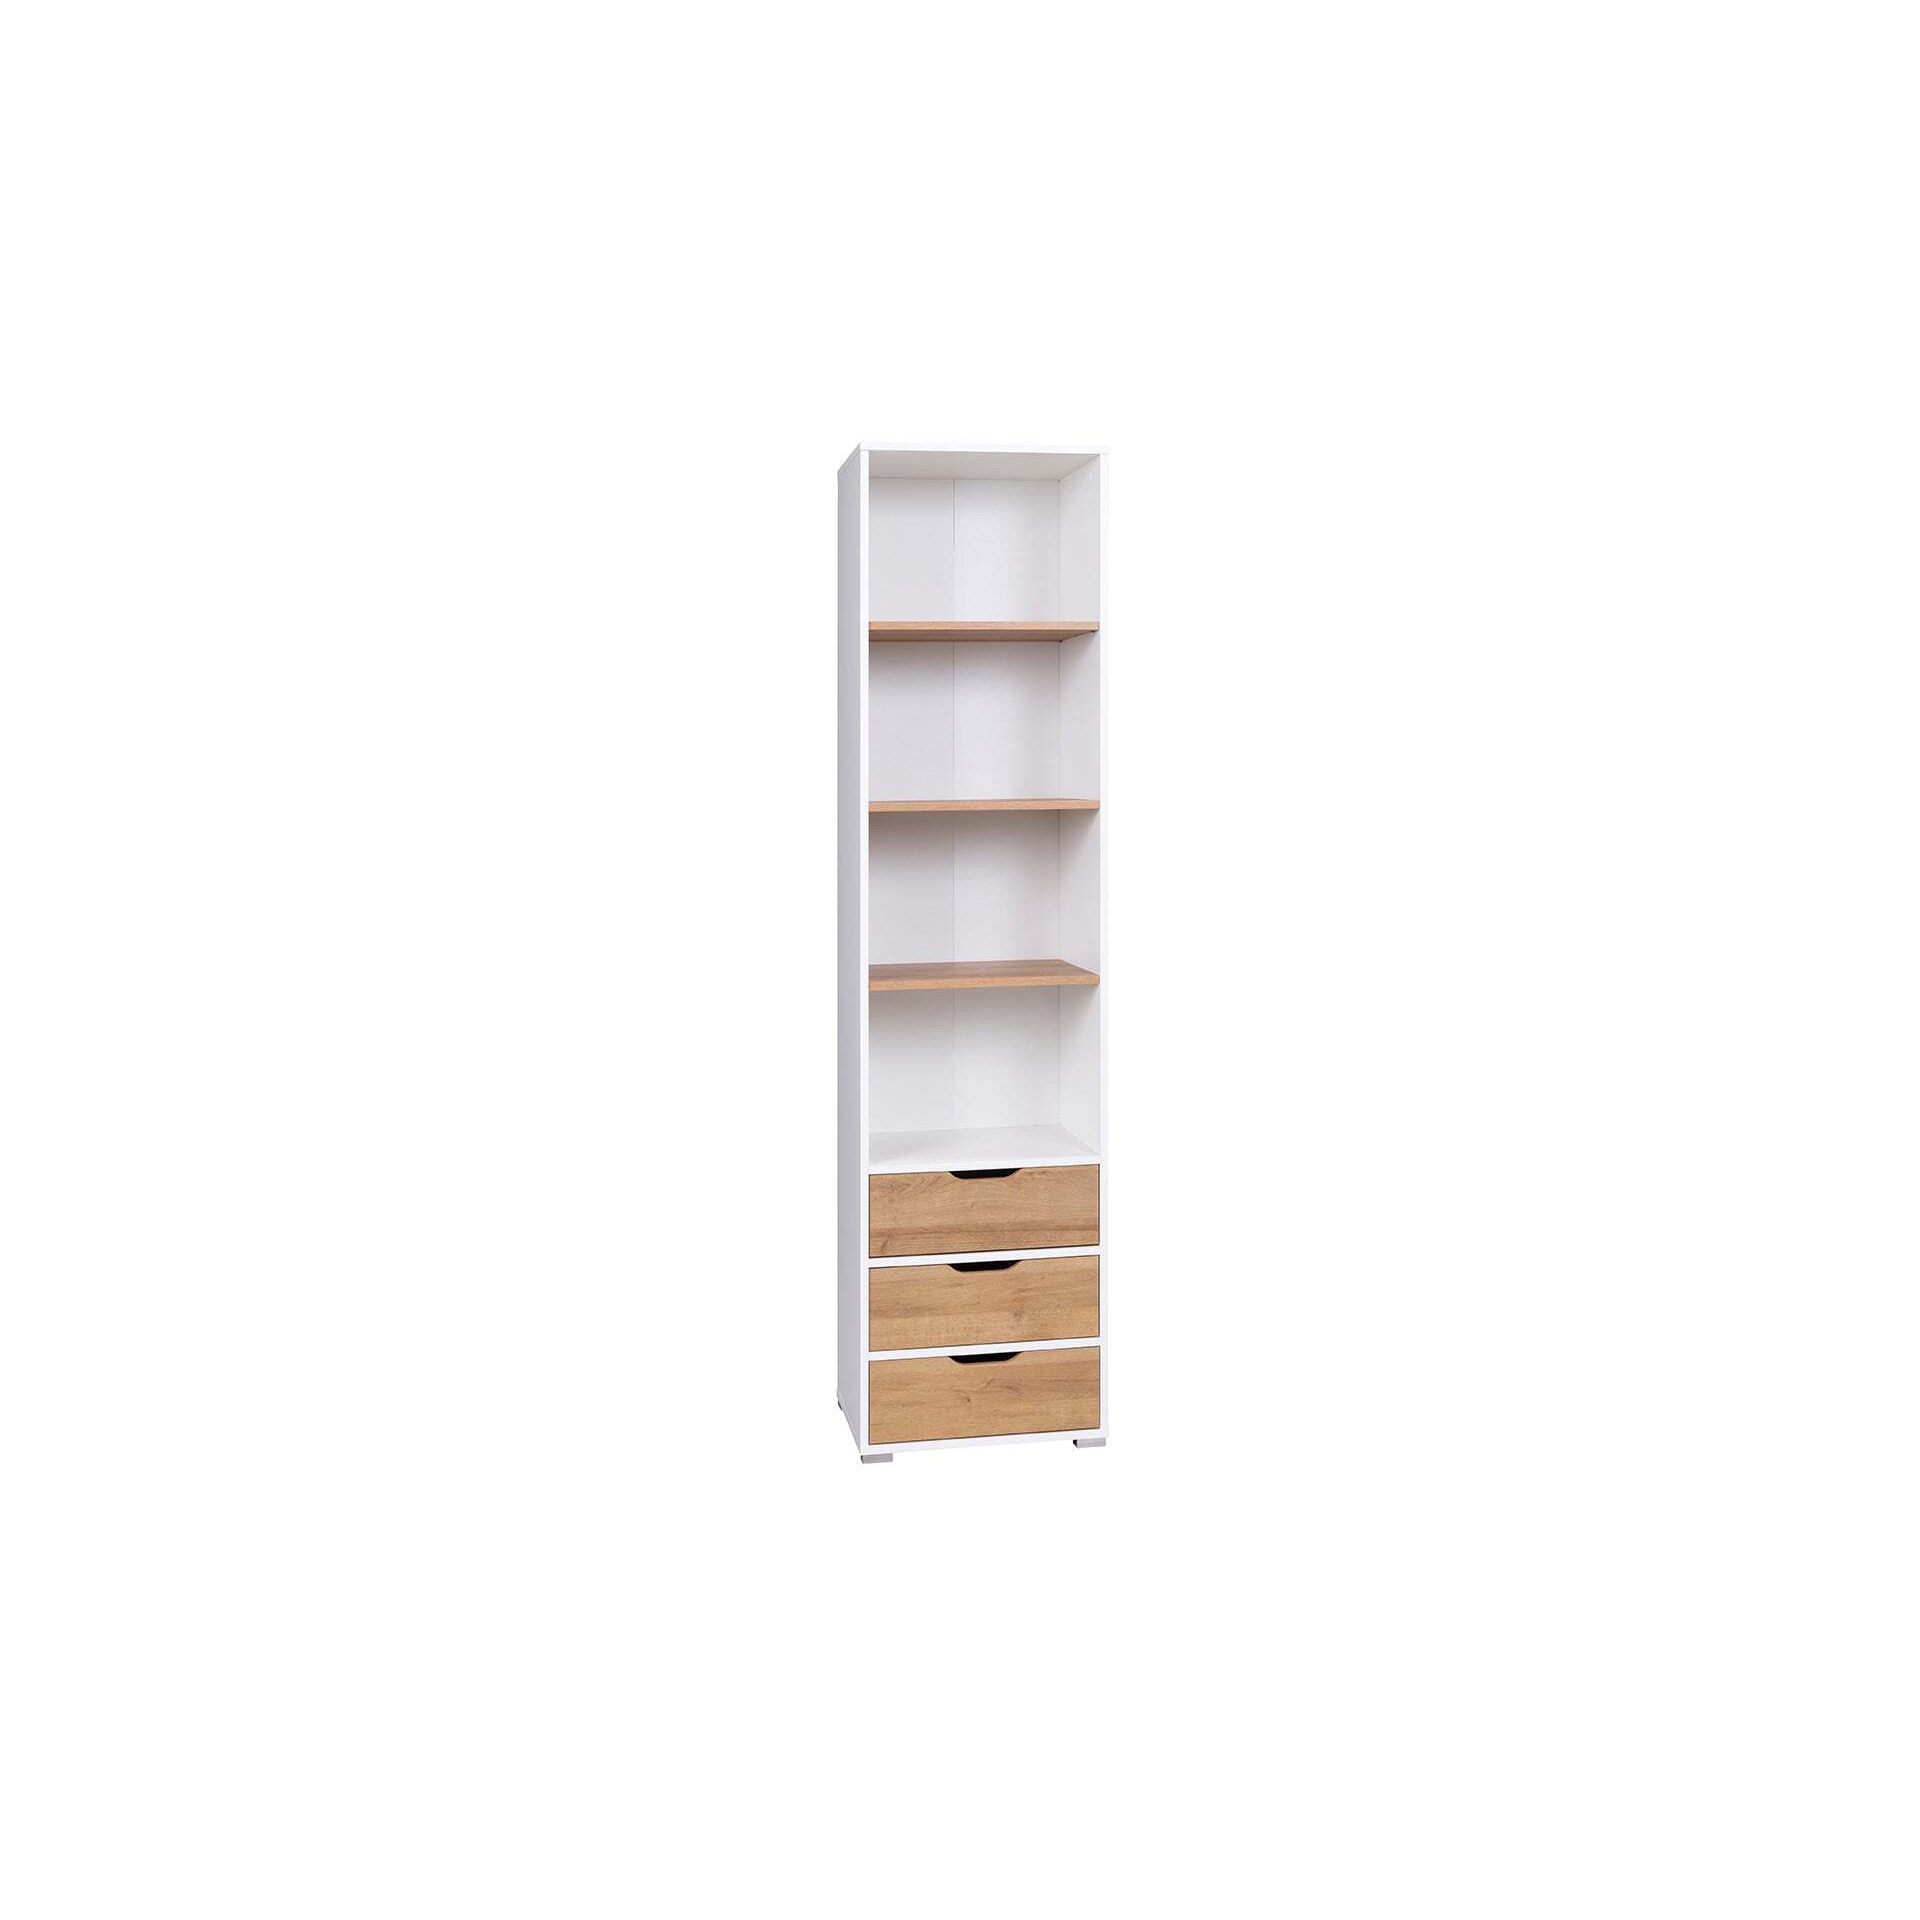 Iwa 08 Bookcase 50cm - Graphite 50cm - image 1